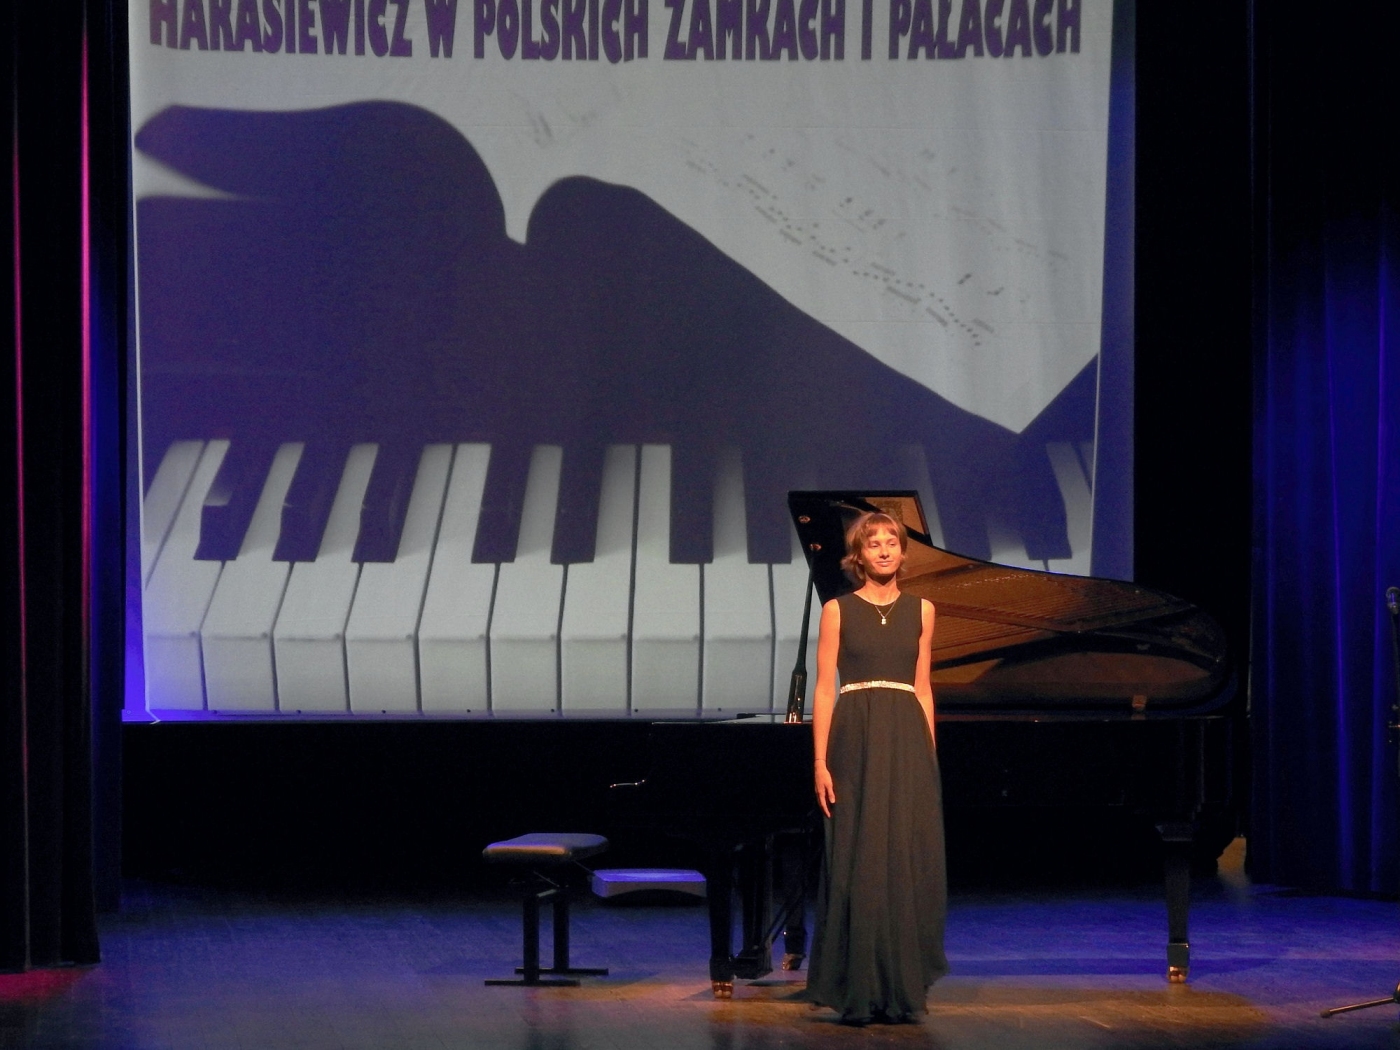 Dziewczyna stoi na scenie przodem do widowni - prezentuje się przed grą na fortepianie